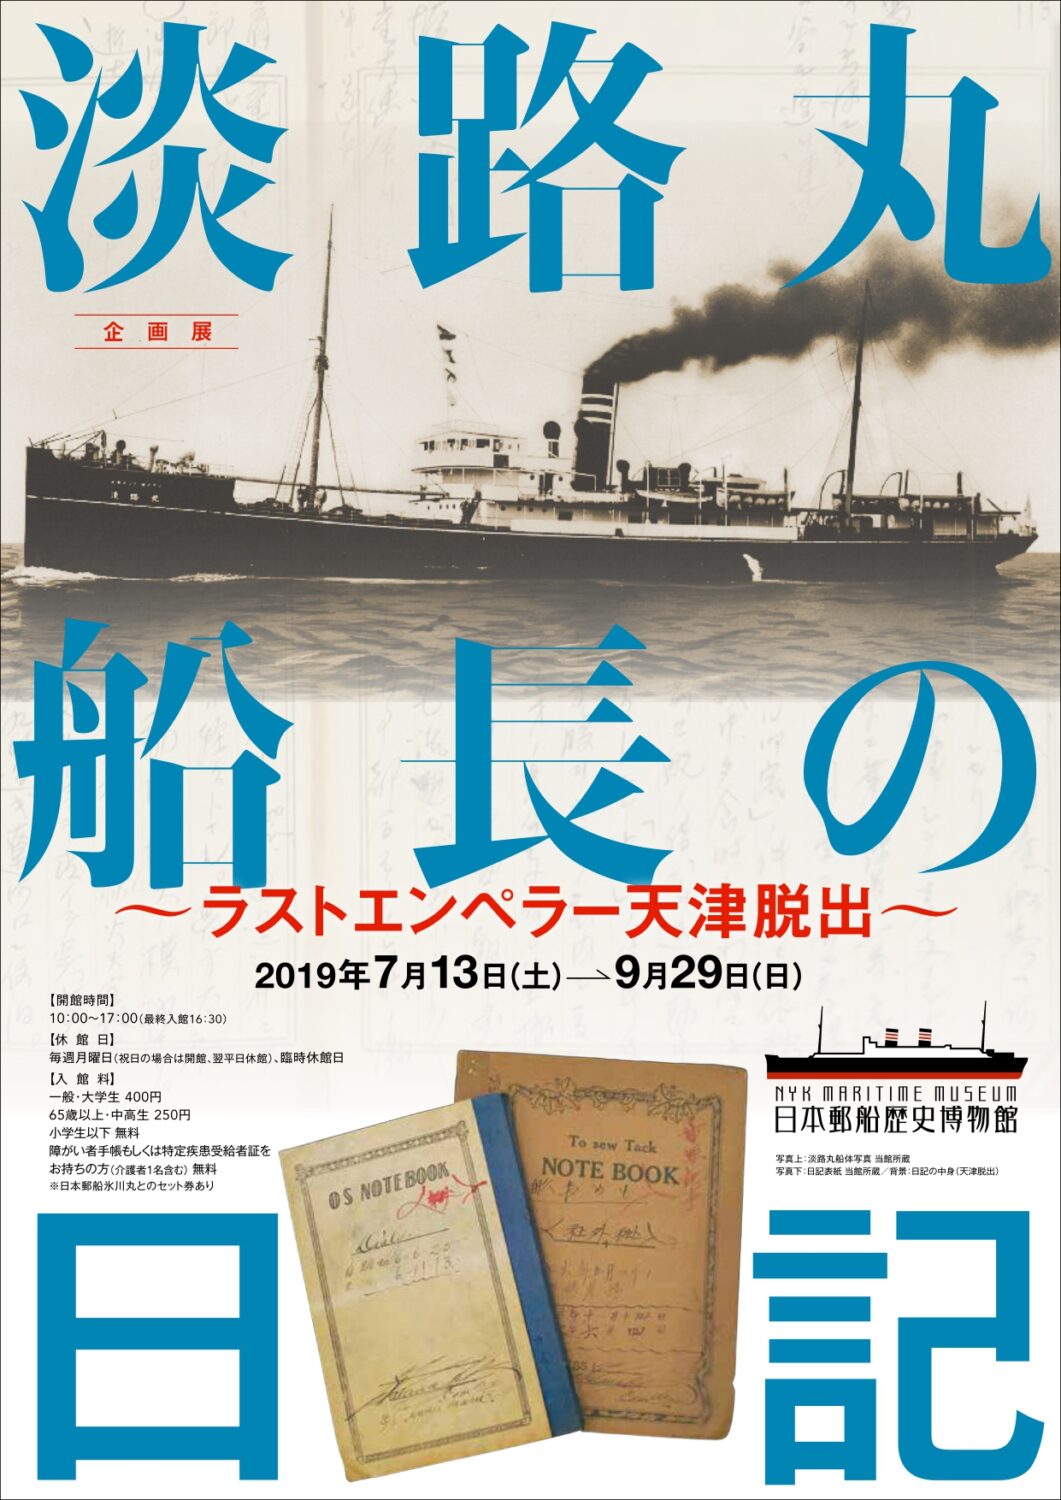 日本郵船歴史博物館、企画展「淡路丸船長の日記」開催